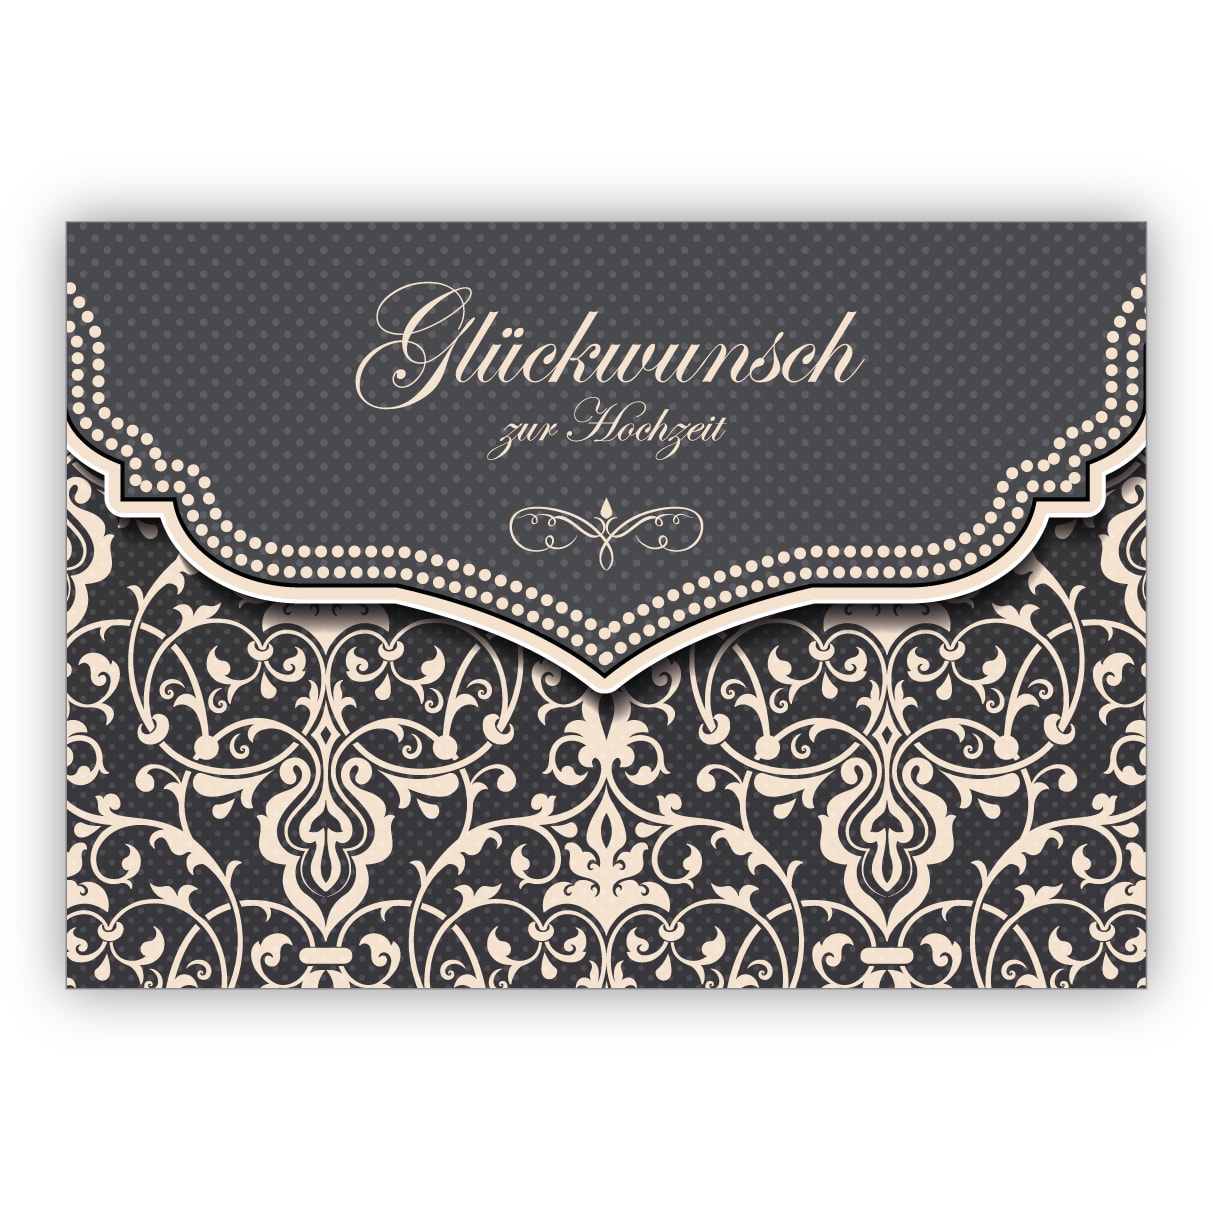 Feine Hochzeitskarte mit Vintage Damast Muster in edlem Grau: Glückwunsch zur Hochzeit